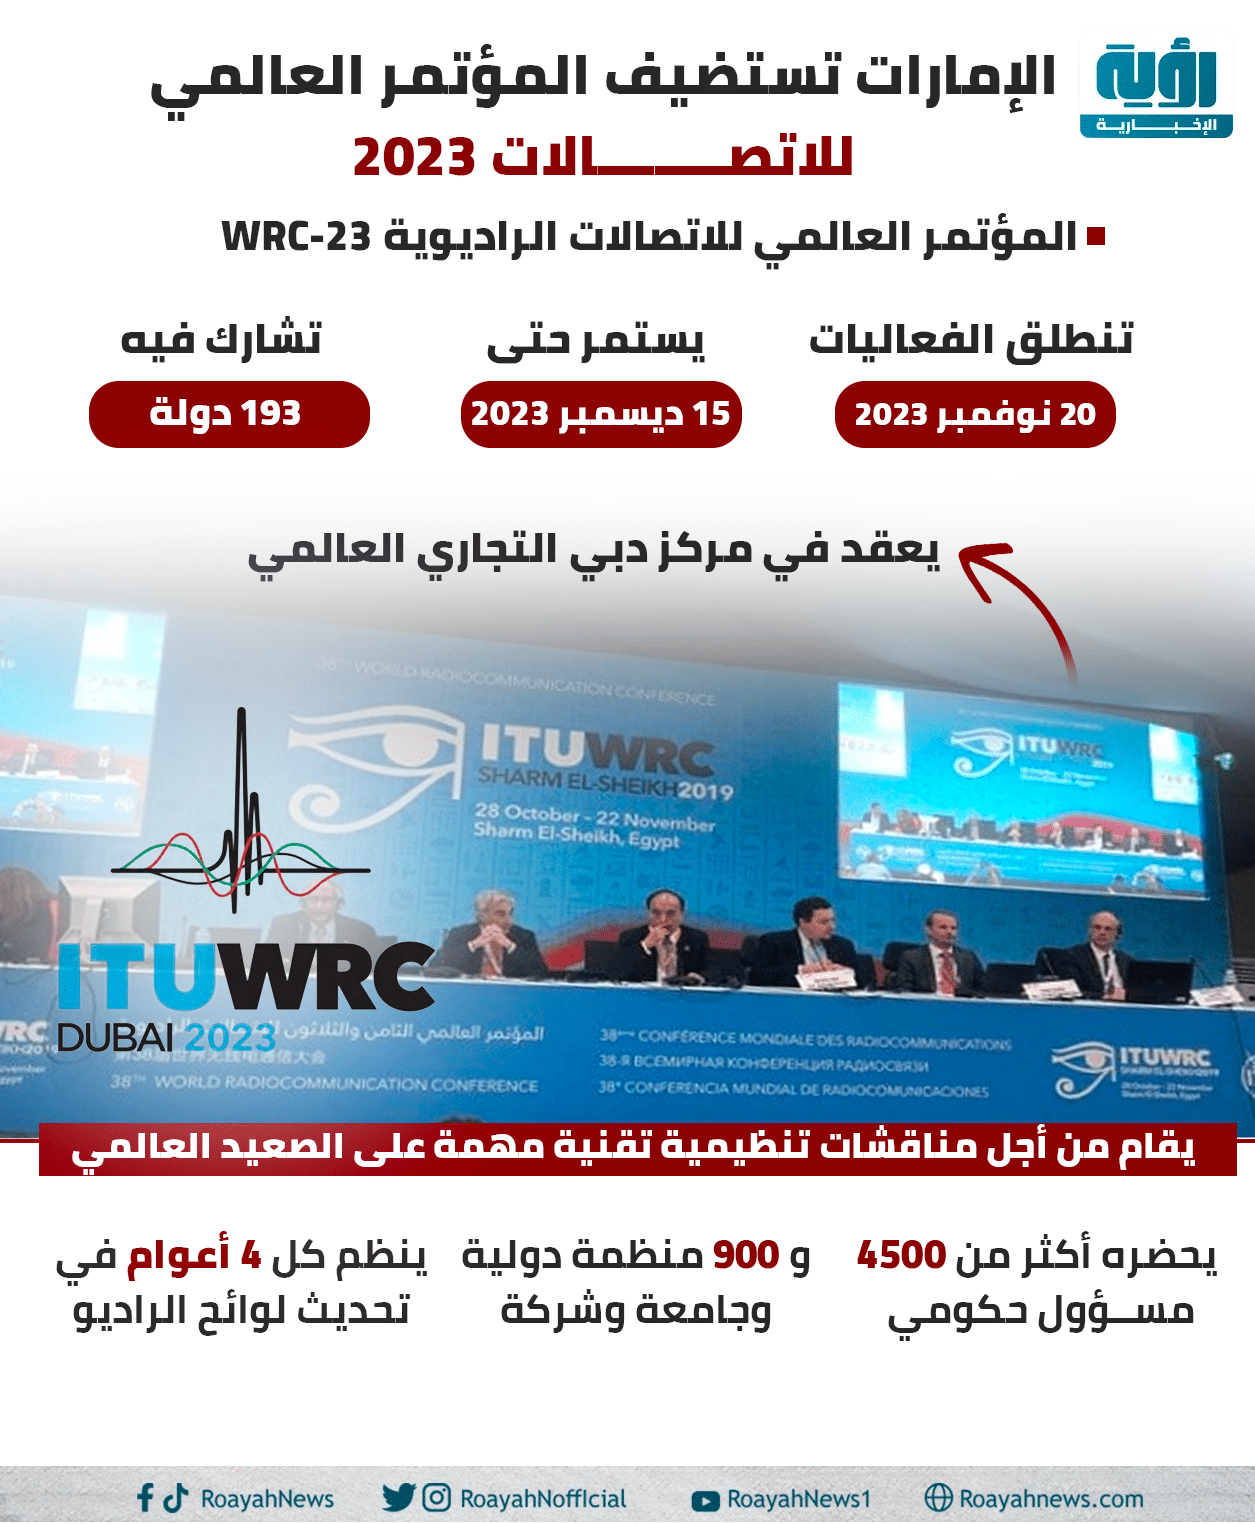 الإمارات تستضيف المؤتمر العالمي للاتصالات 2023